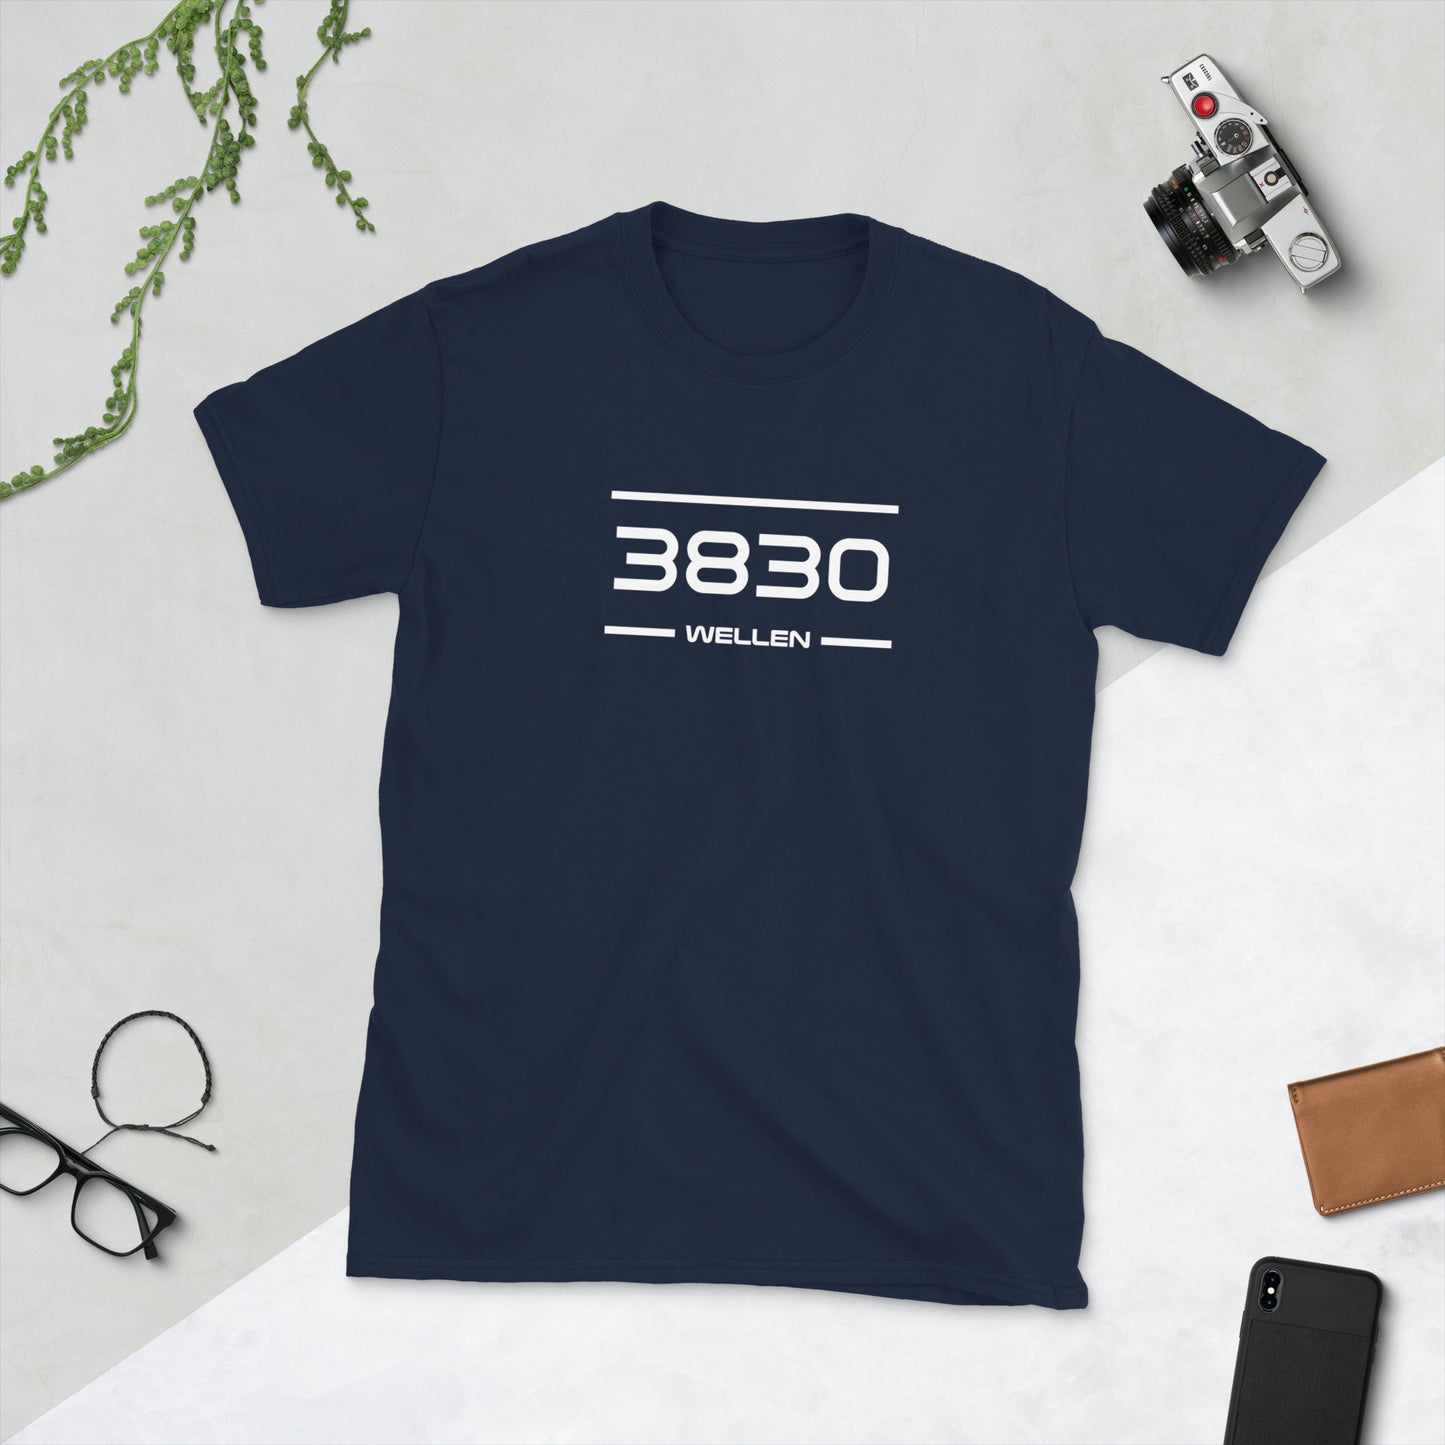 Tshirt - 3830 - Wellen